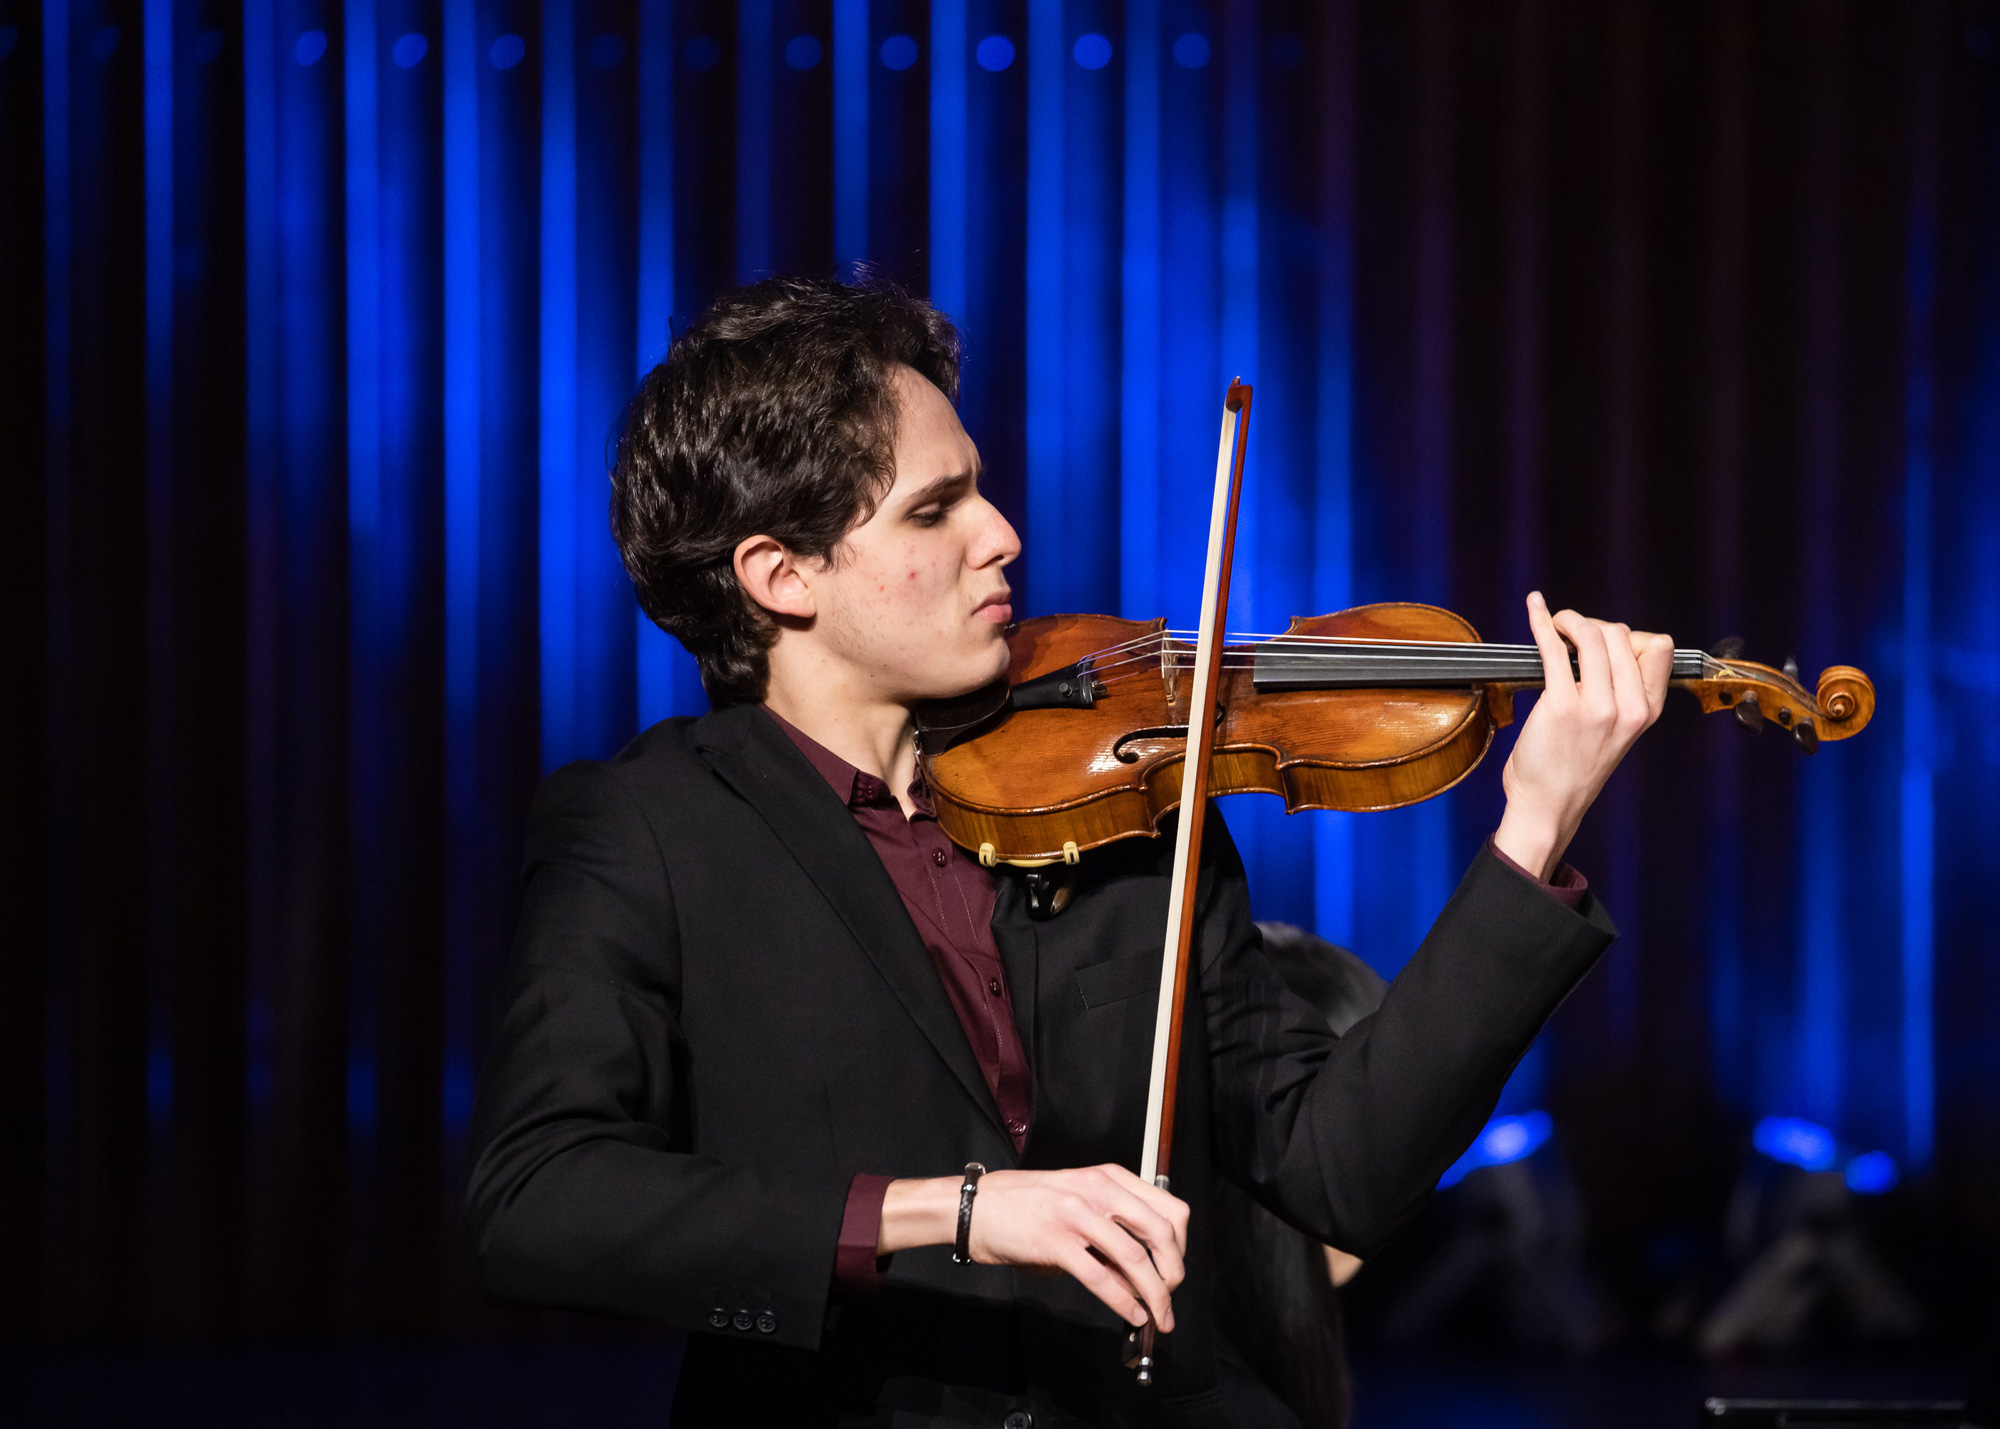 Joseph Joachim Violinwettbewerb 2021: Konzert Javier Comesaña, Semifinale II am 06.10.2021